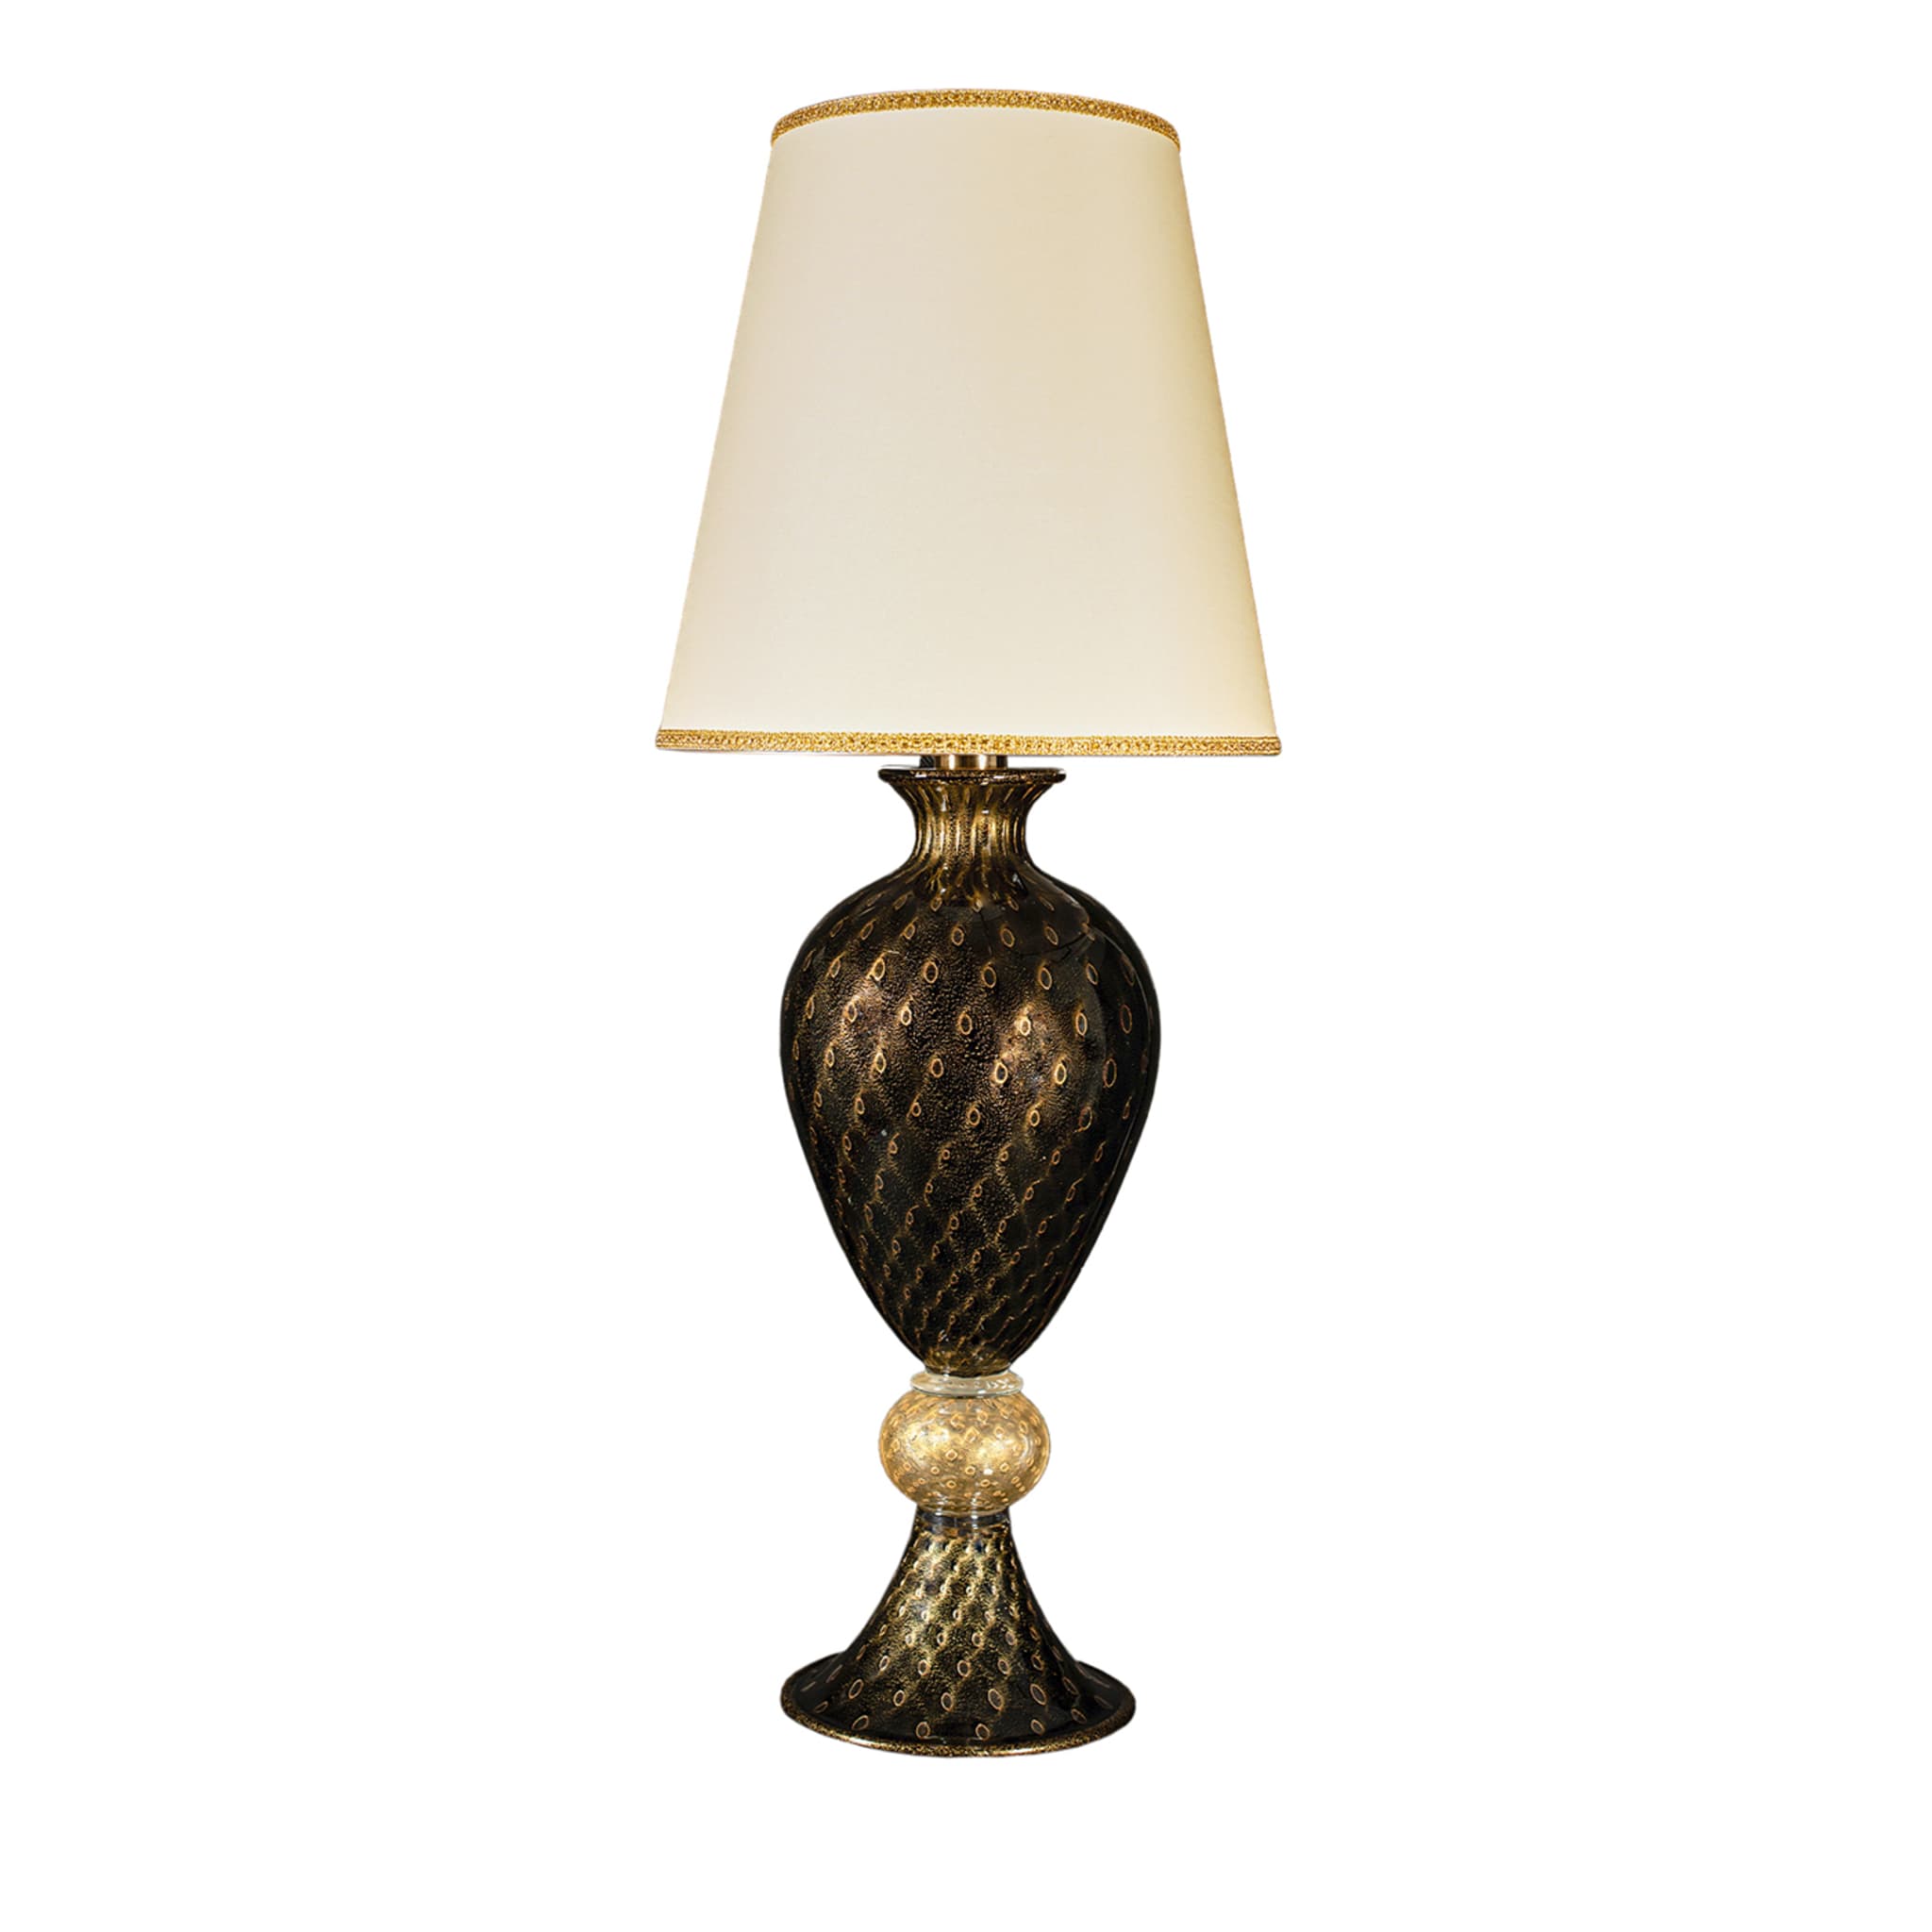 Grande lampe de table noire et dorée #1 - Vue principale